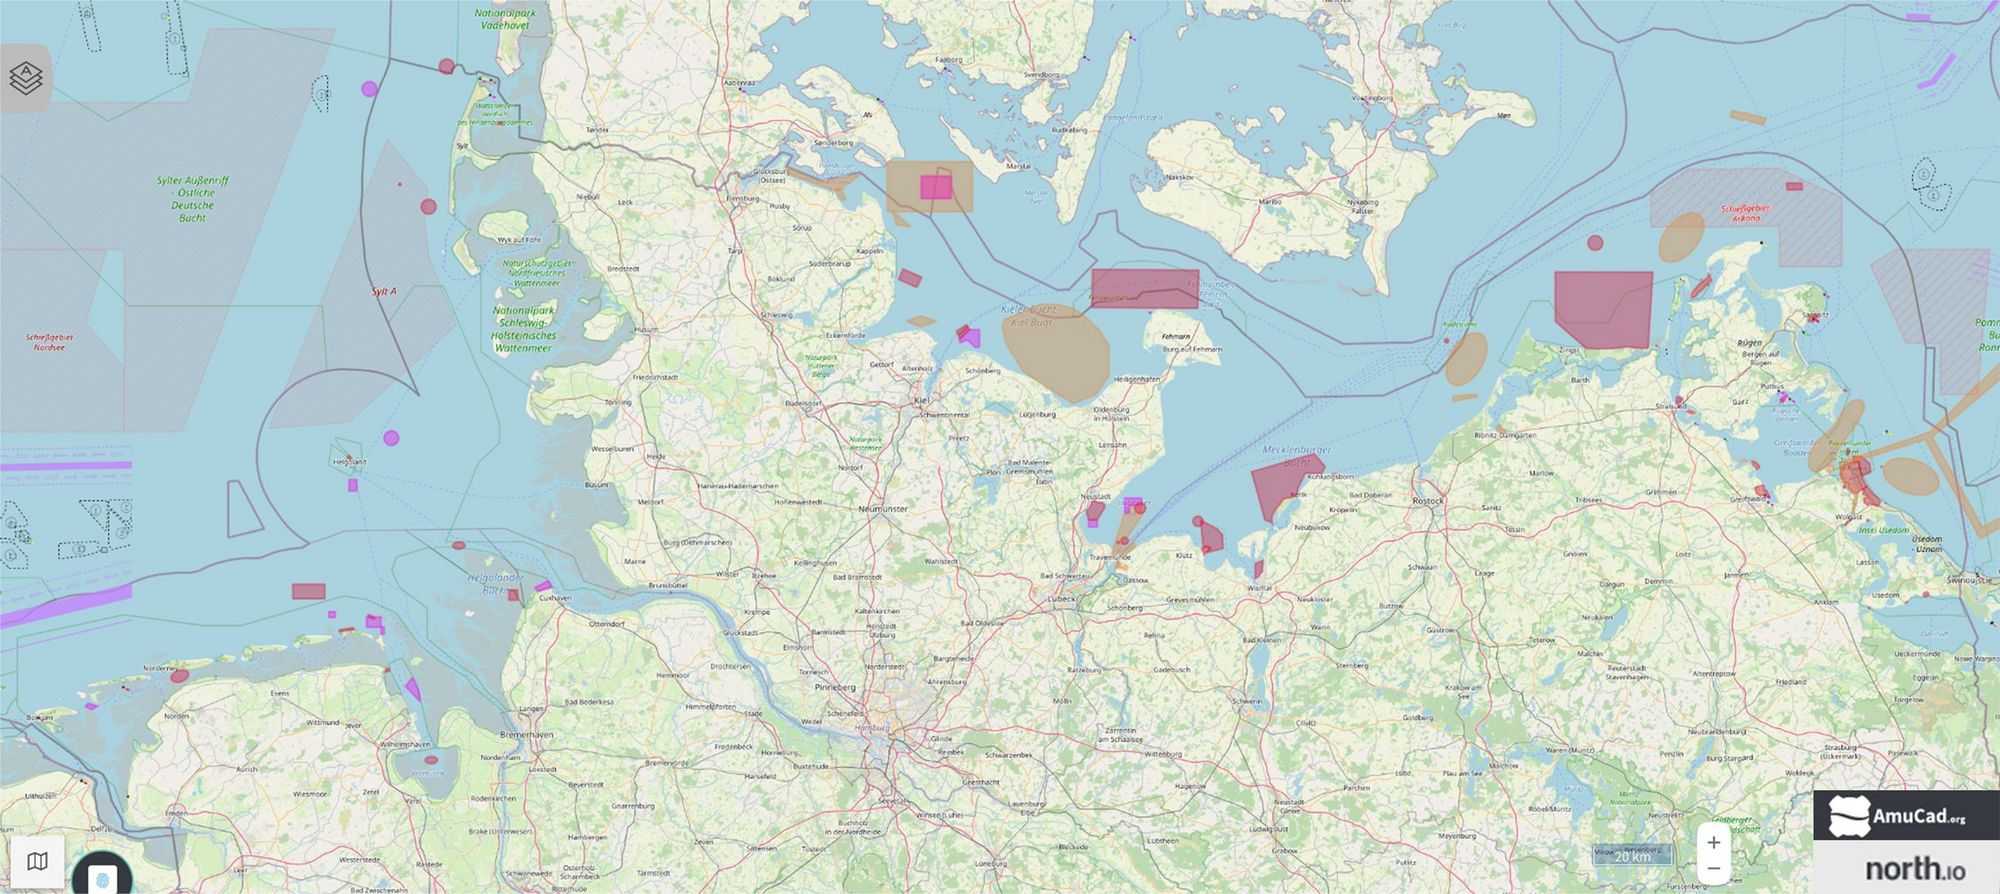 Karte der Nordsee und Ostsee mit munitionsbelasteten Gebieten.